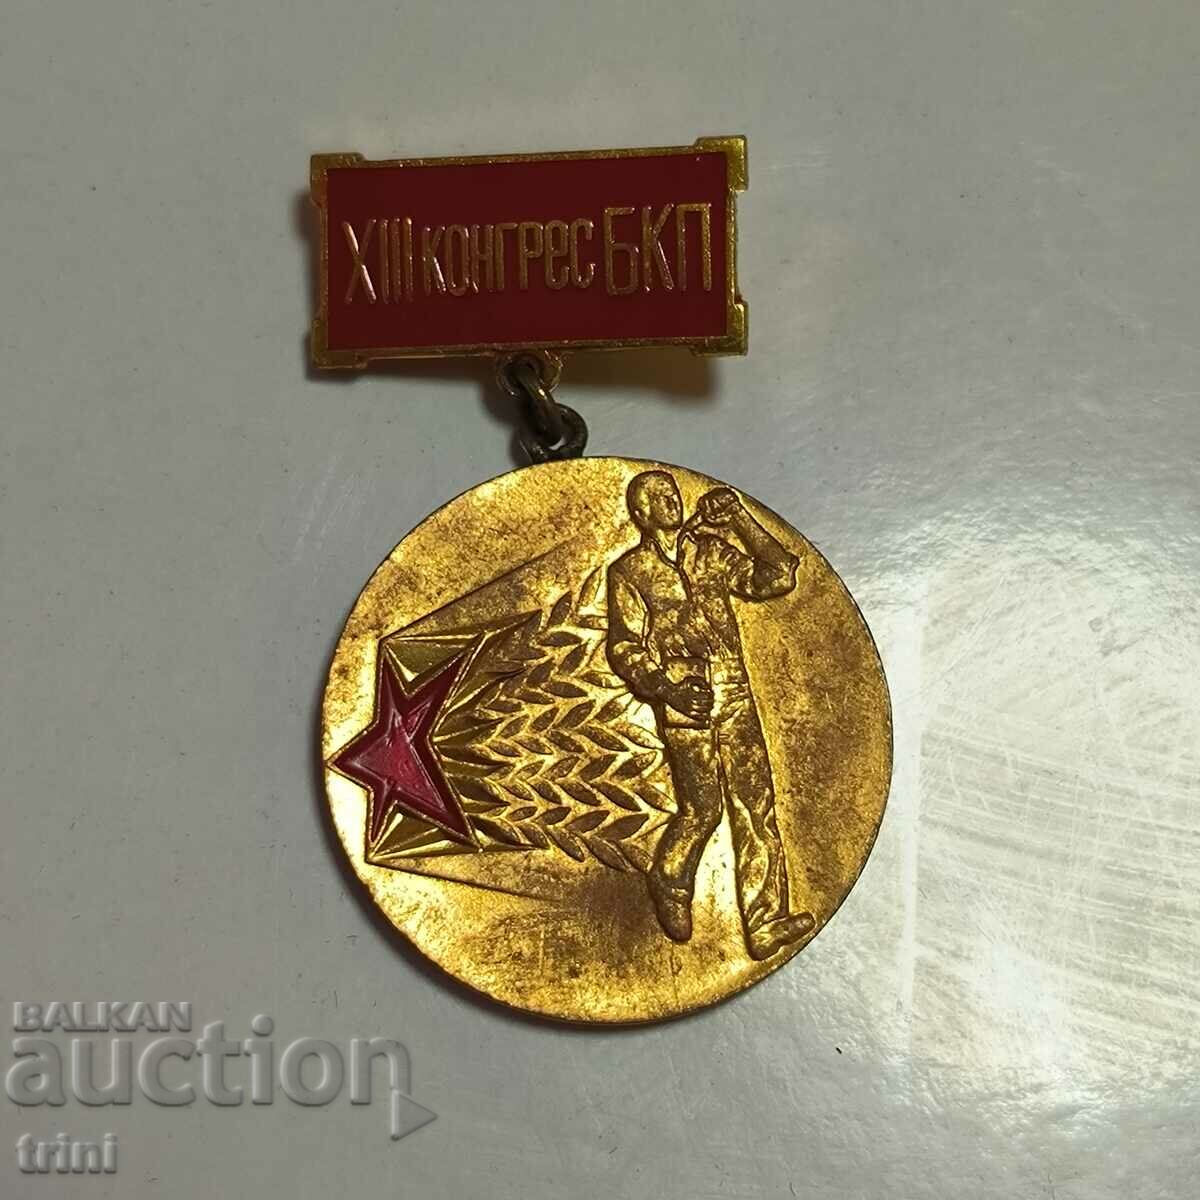 Μετάλλιο του 13ου Συνεδρίου του Κομμουνιστικού Κόμματος της Σοβιετικής Ένωσης Πρώτη θέση στο διαγωνισμό